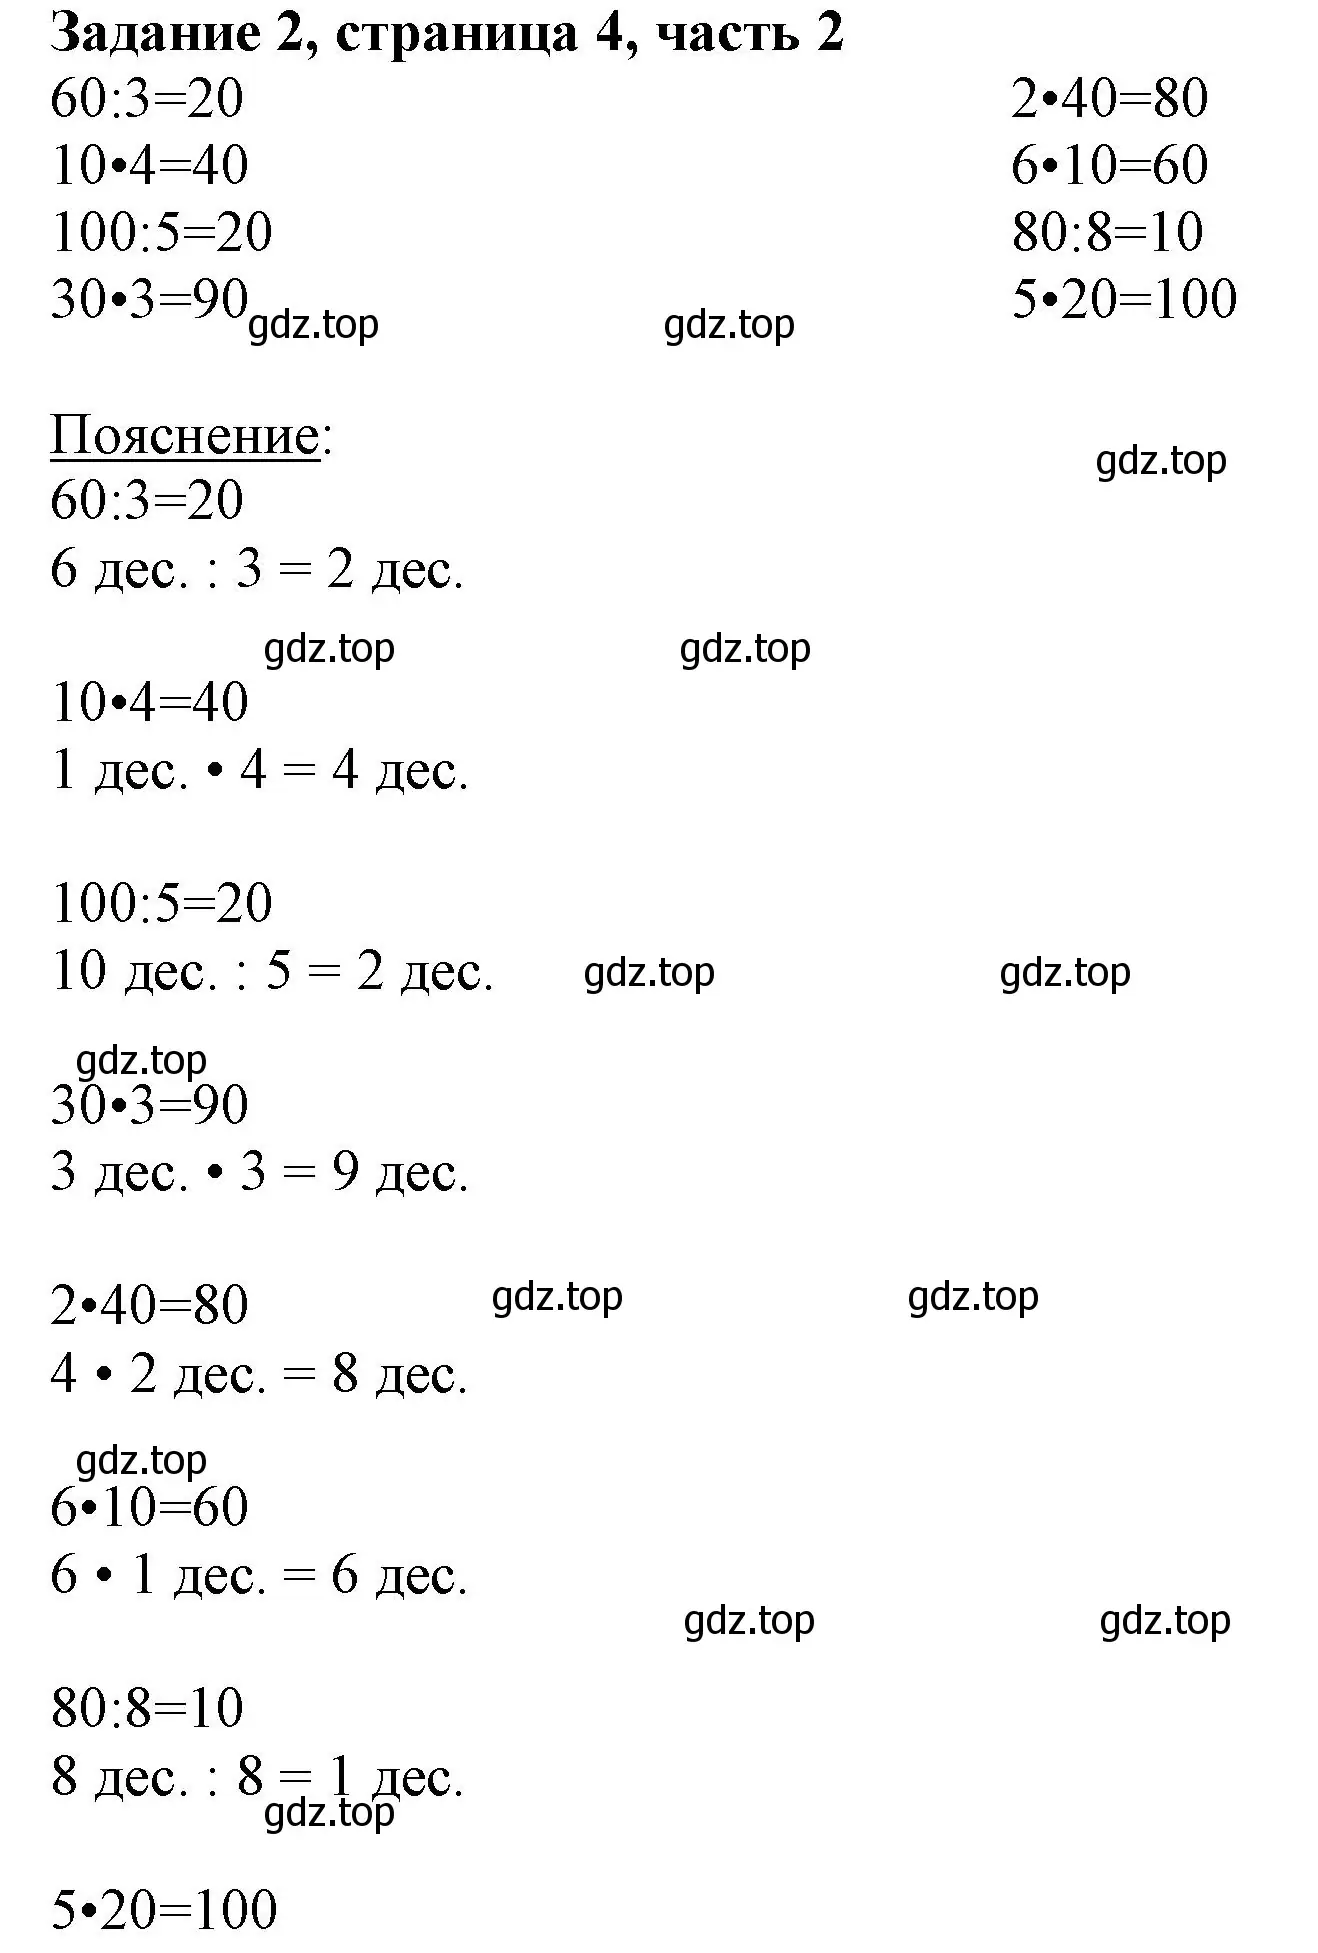 Решение номер 2 (страница 4) гдз по математике 3 класс Моро, Бантова, учебник 2 часть